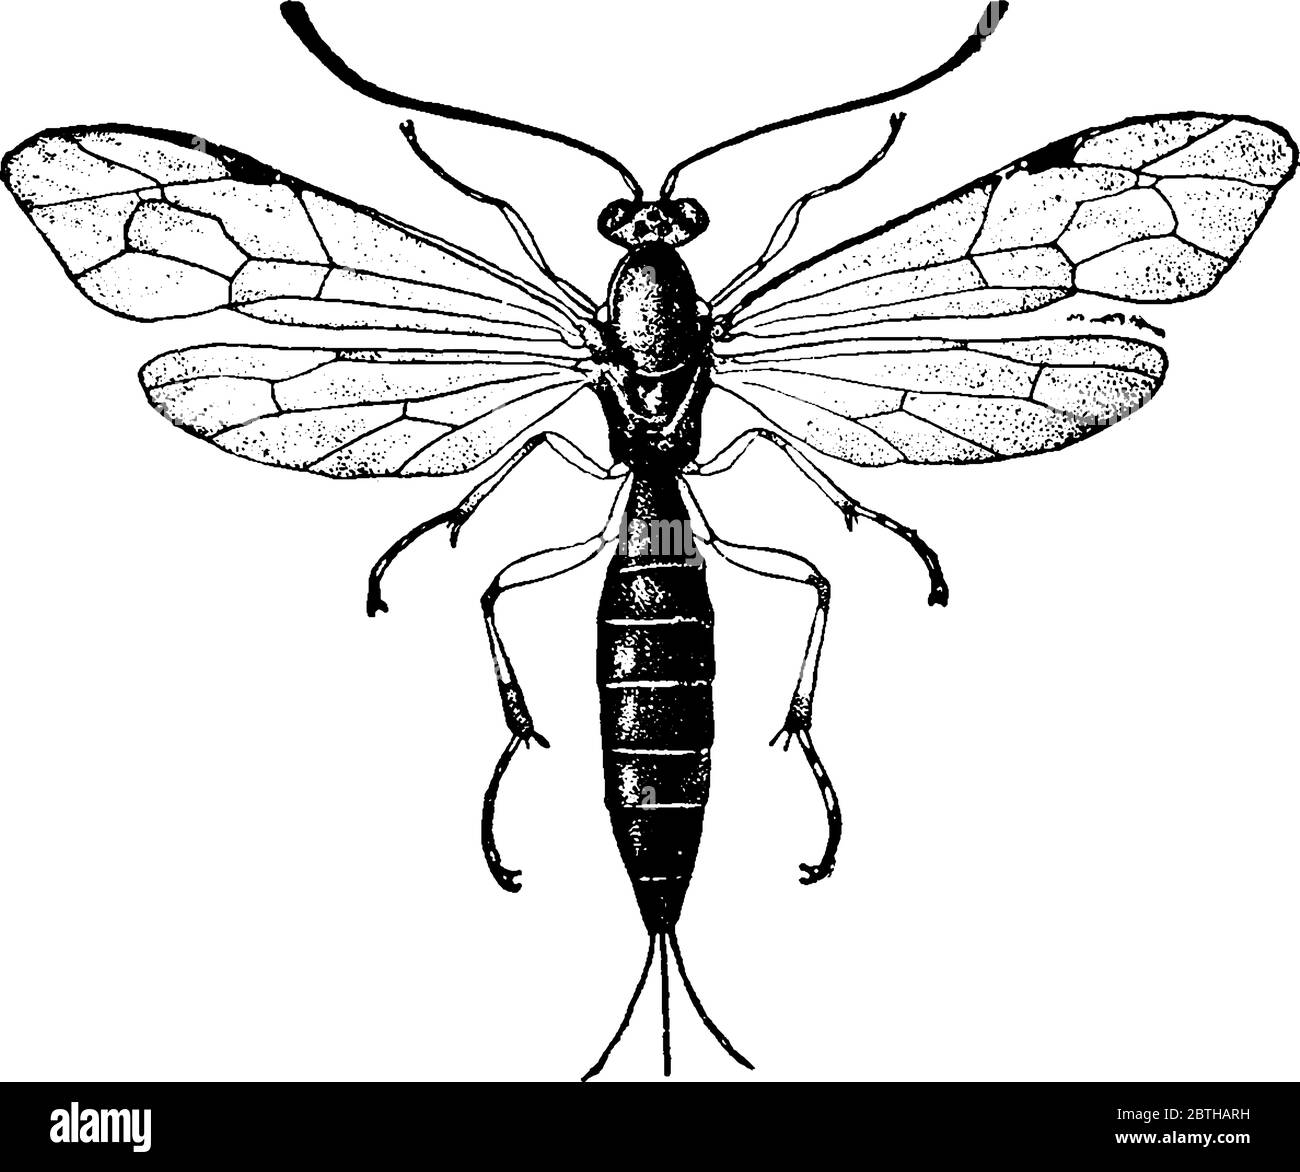 Une représentation typique d'une abeille, Pimpla inquisito, avec un corps maigre et tacheté. Les veines radiales passent par leurs avant-brewings et les ailes arrière, ligne vintage Illustration de Vecteur